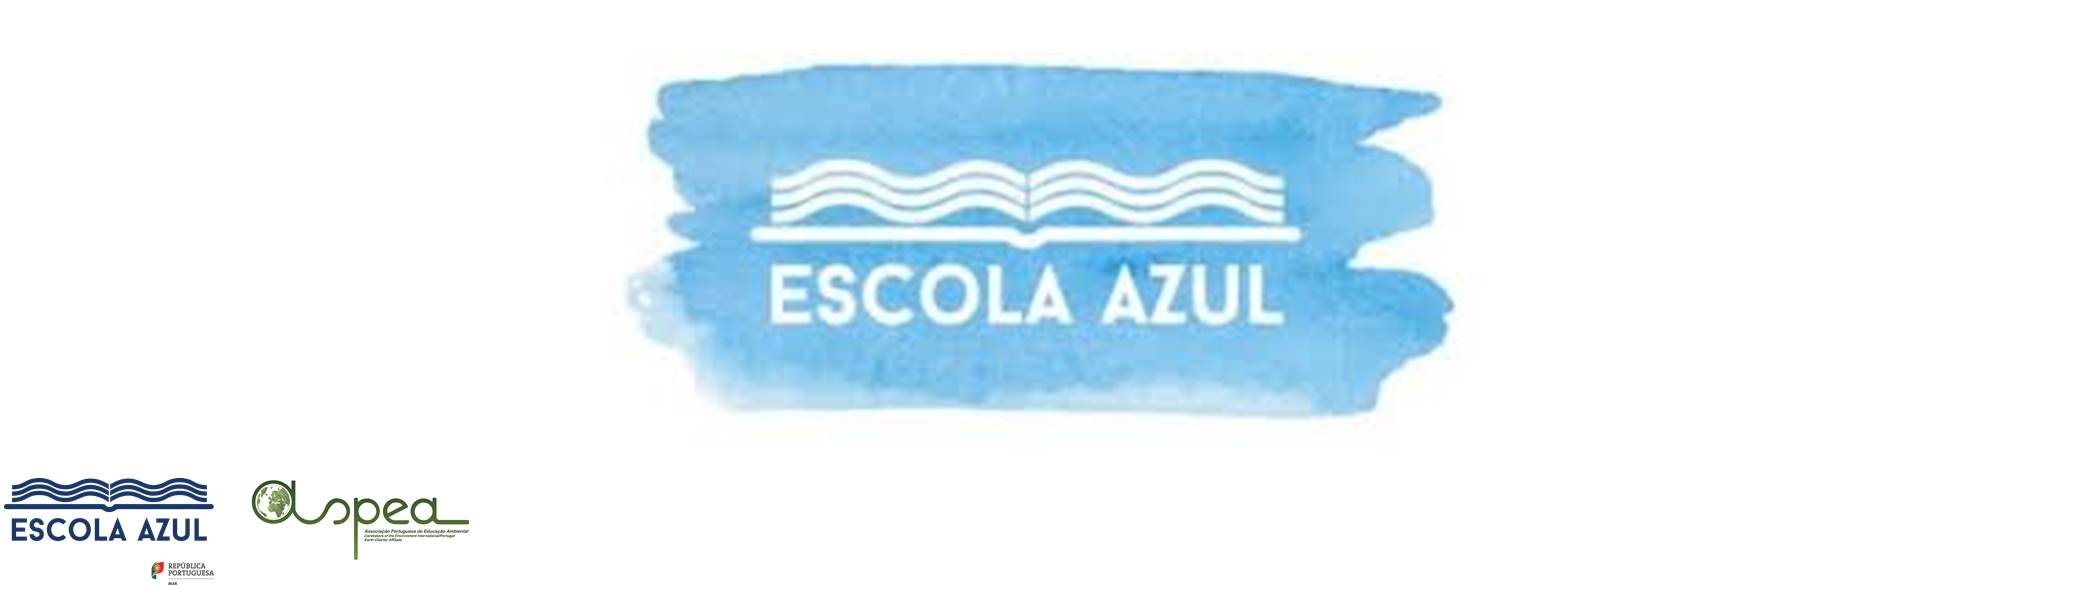 escola azul banner